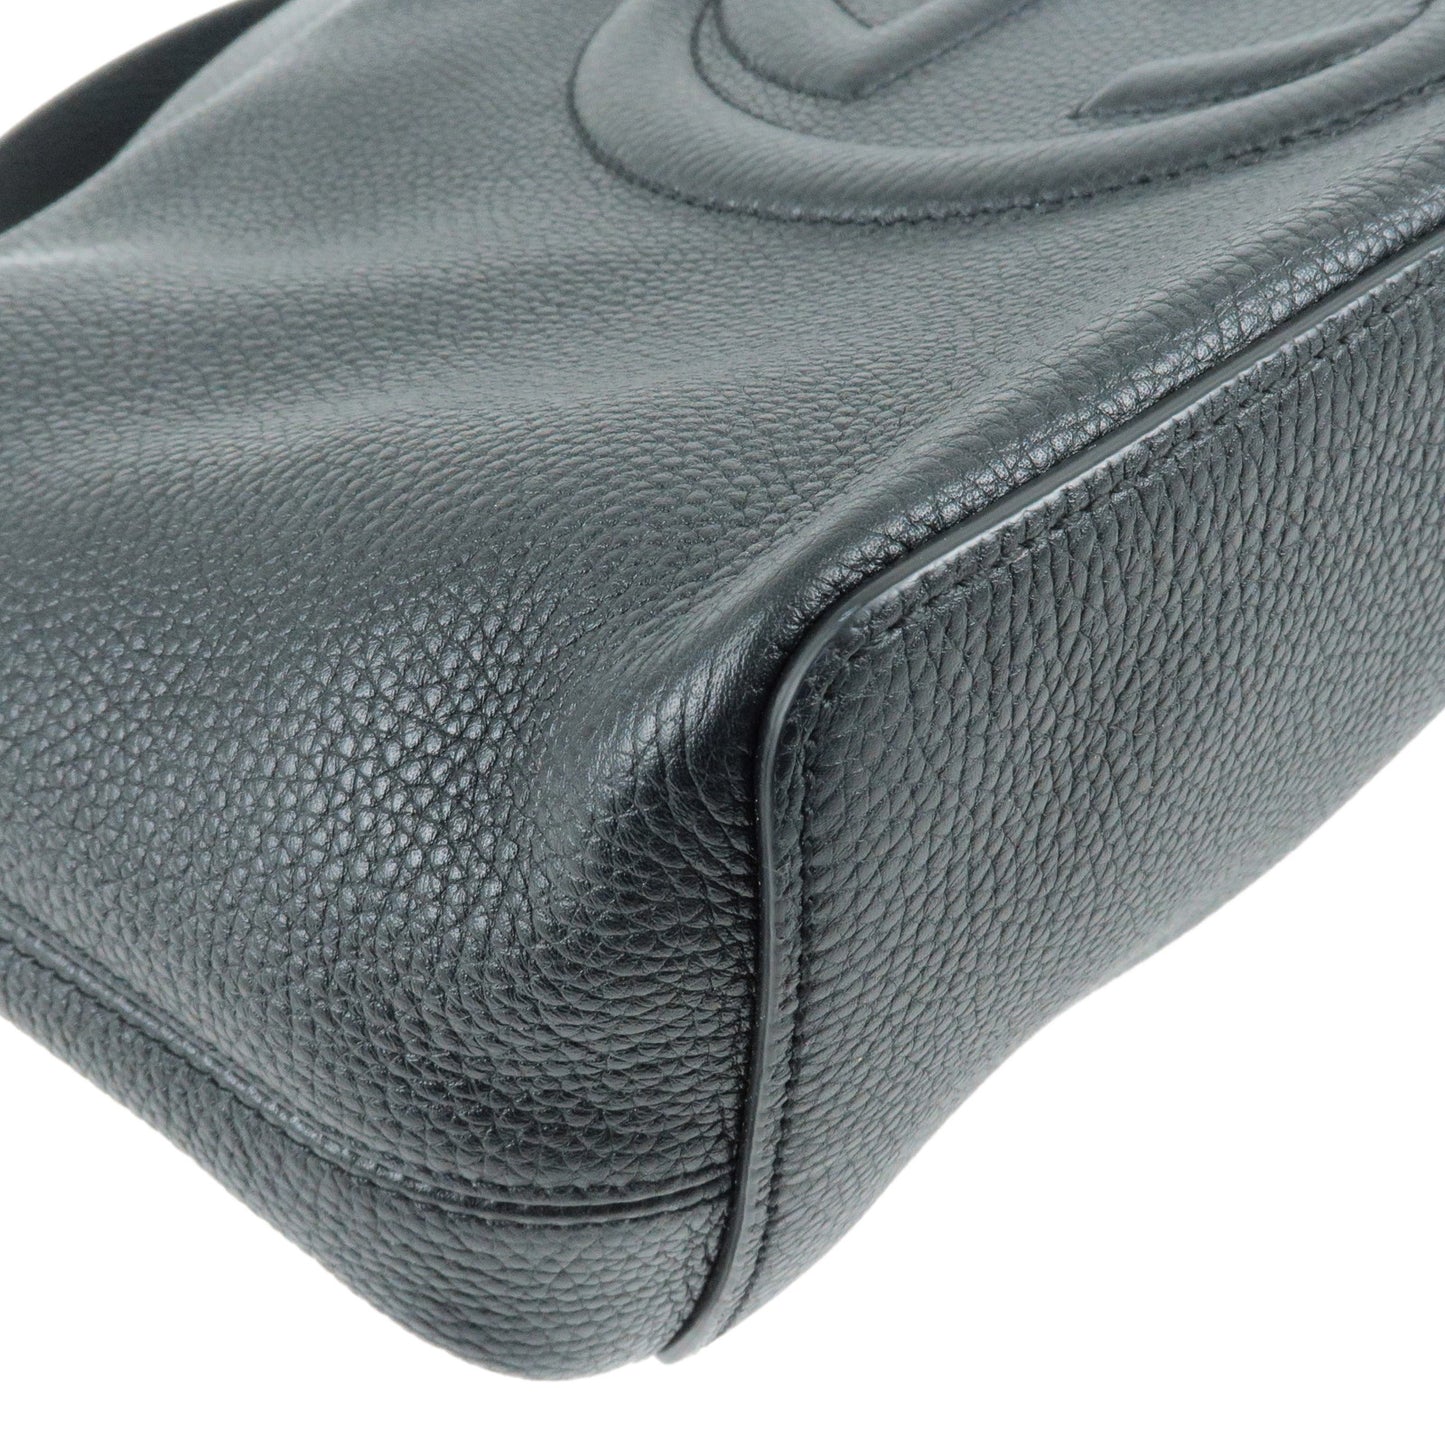 GUCCI SOHO Leather Shoulder Bag 2Way Bag Black 536194